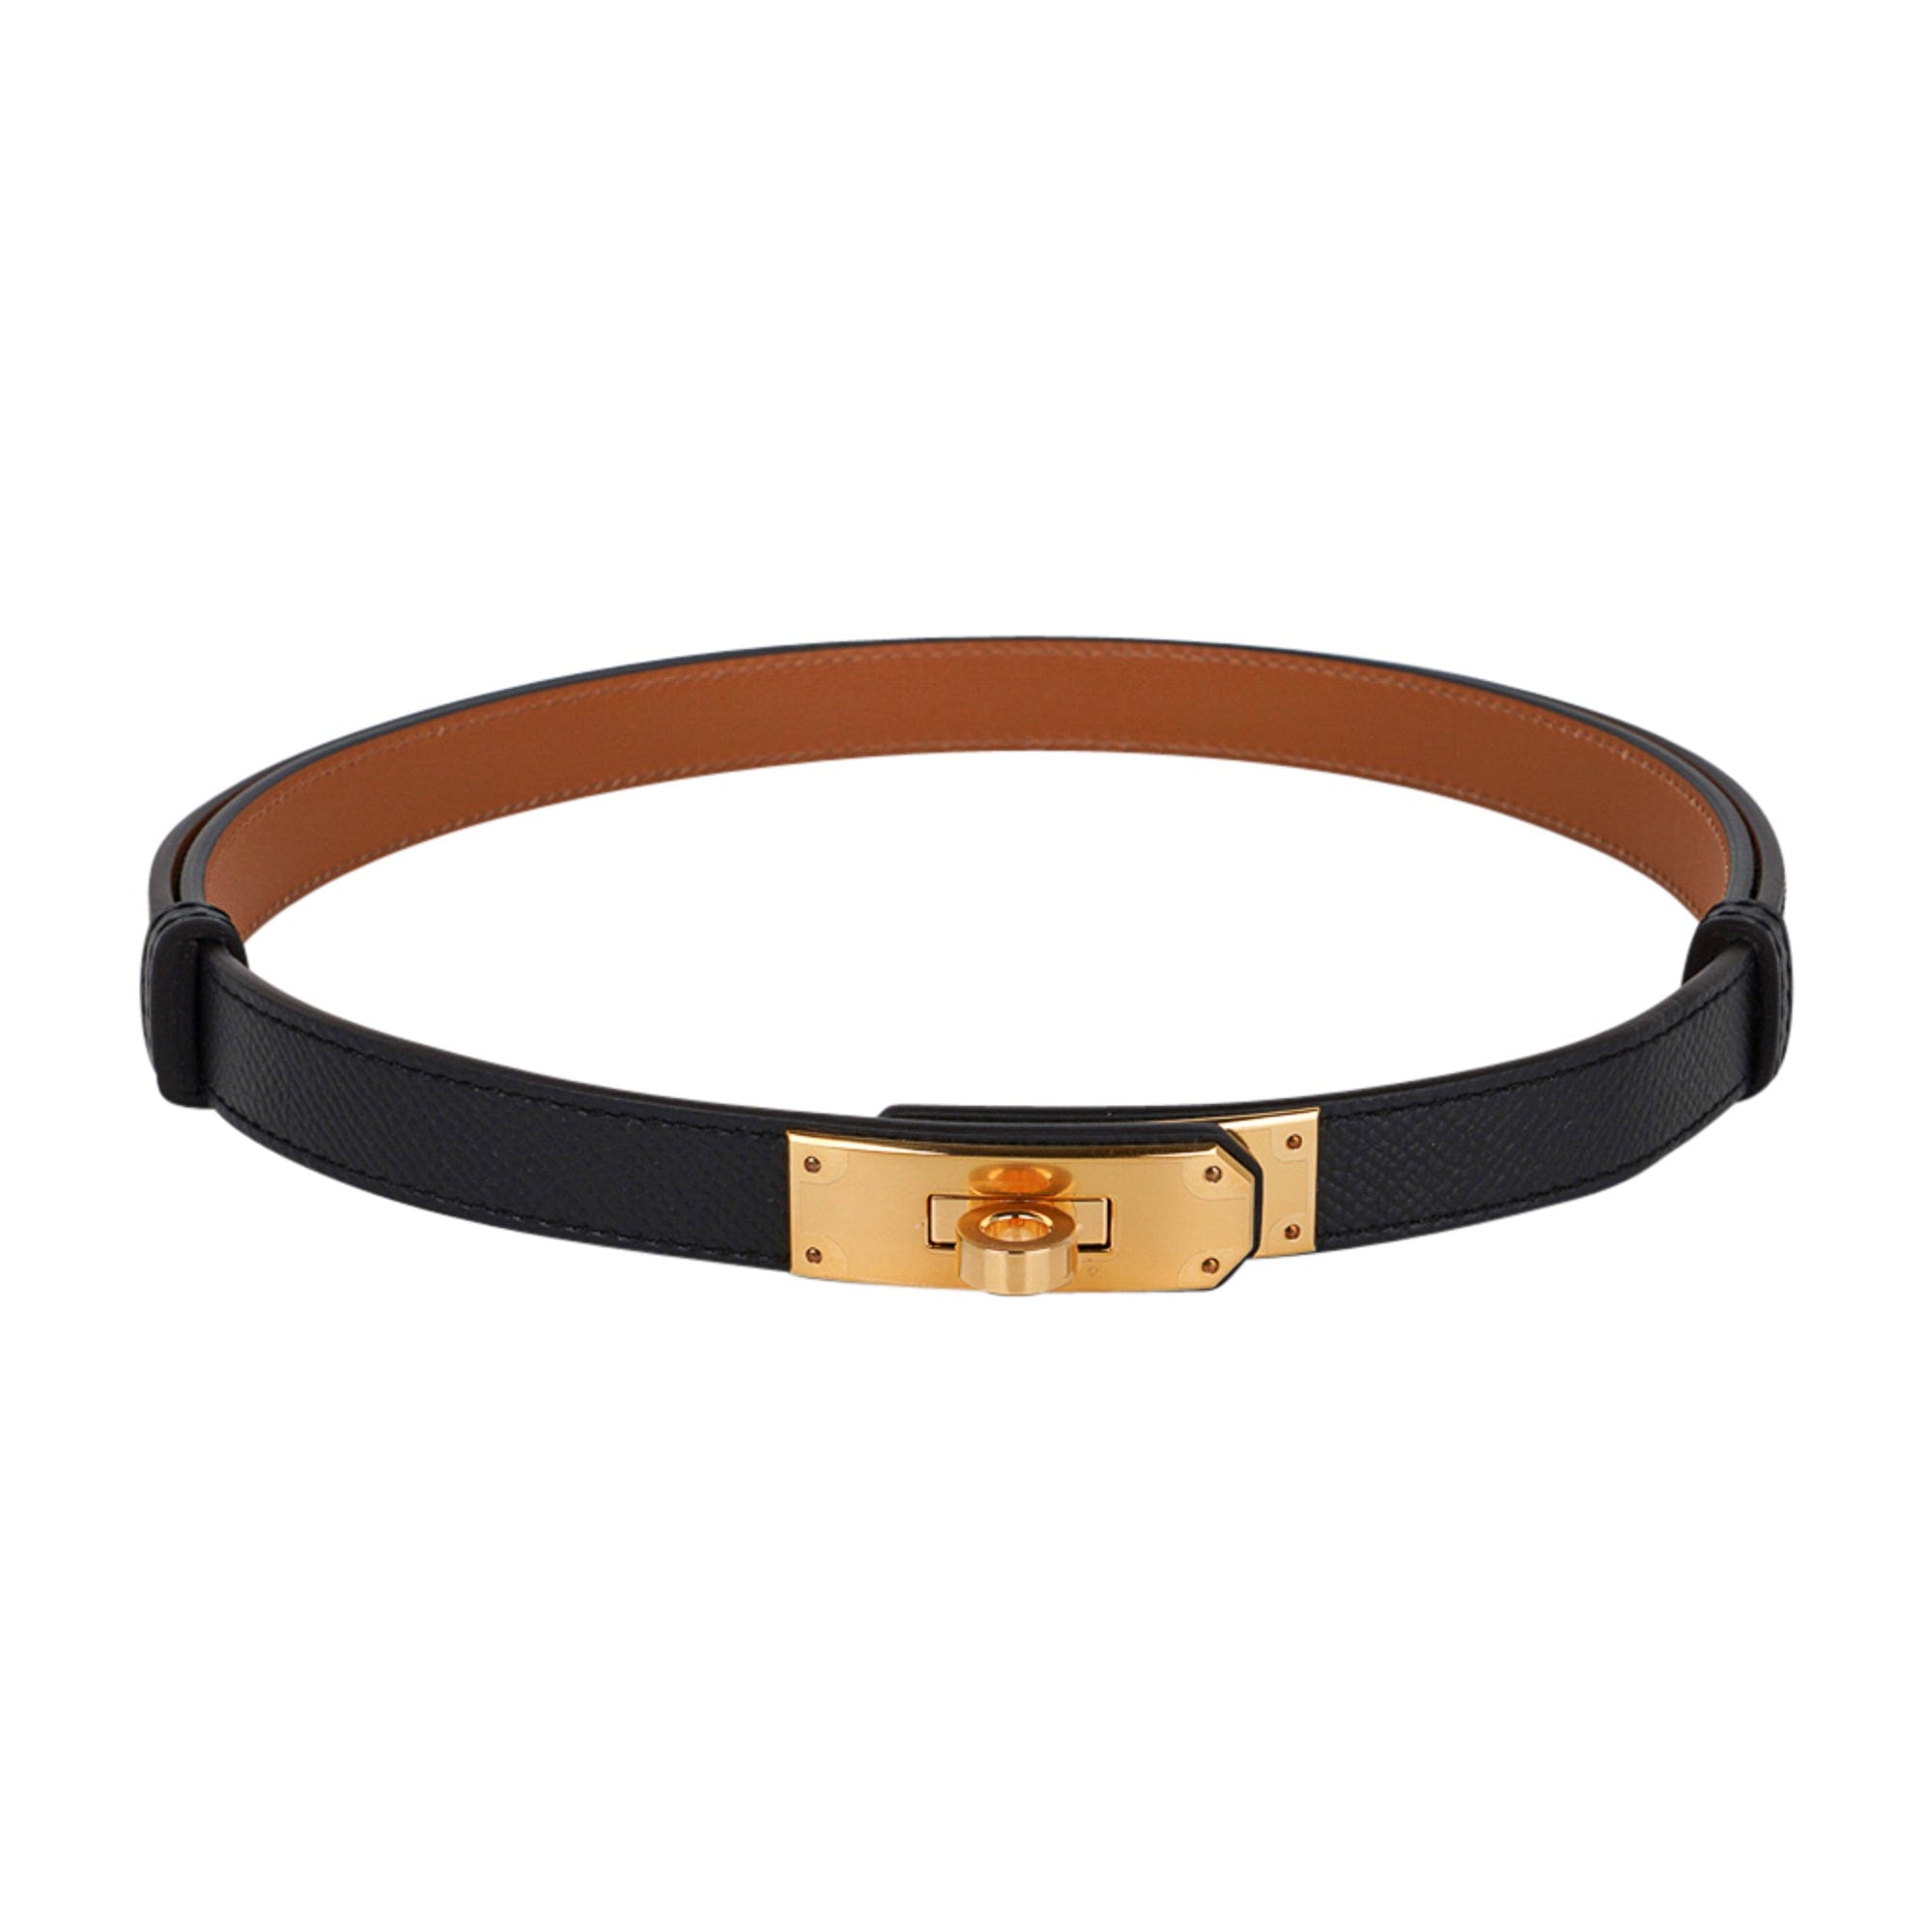 Replica Hermes Kelly 18 Belt In Black Epsom Leather